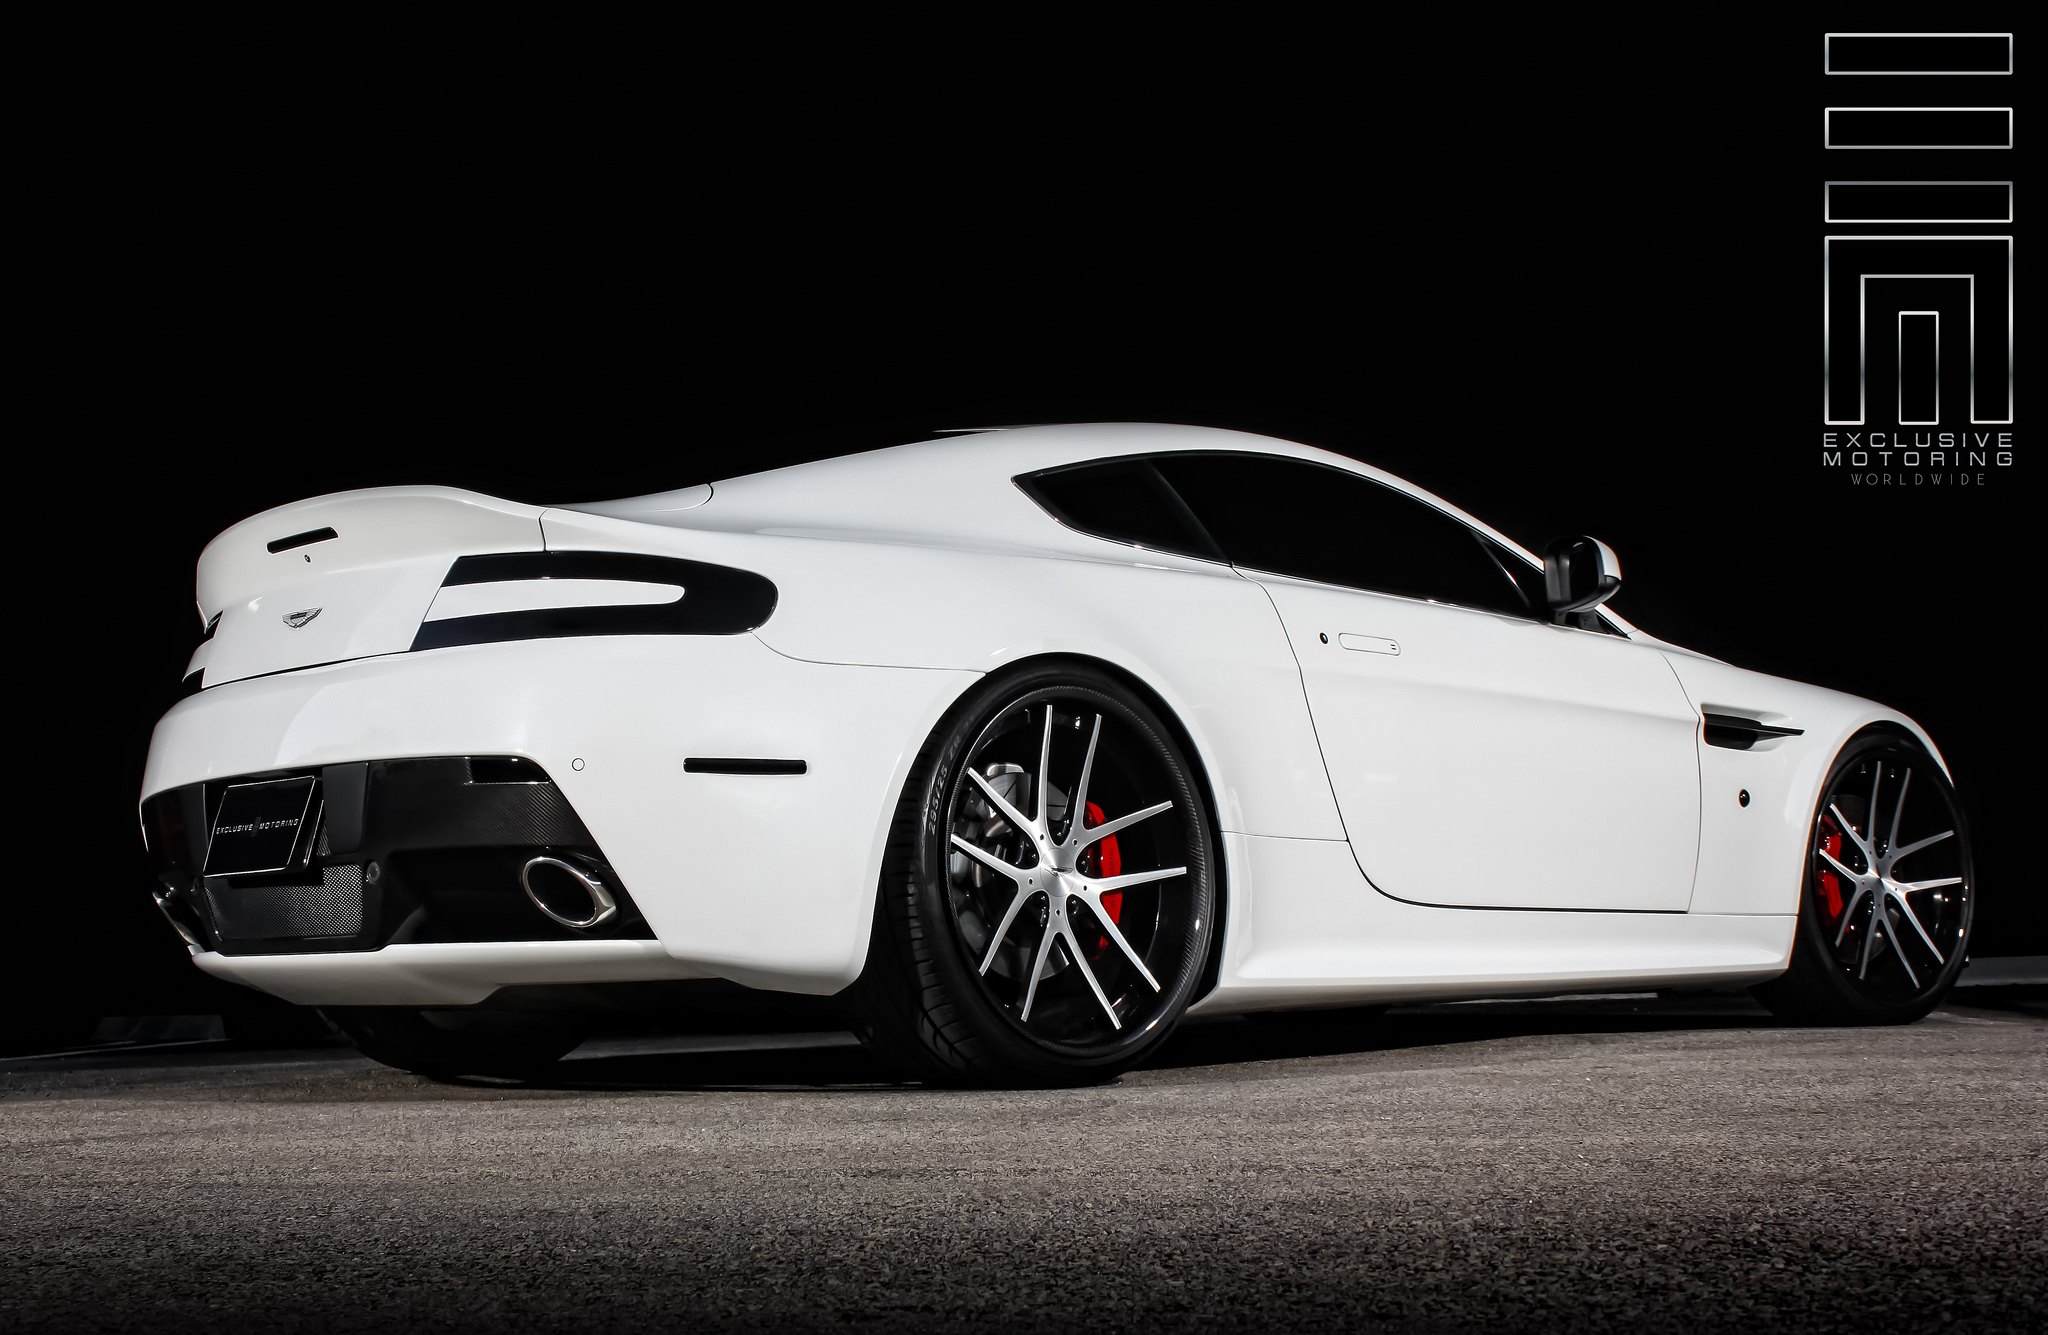 Snow White Aston Martin Vantage on wheels with 5 split spoke design - Photo by Exclusive Motoring